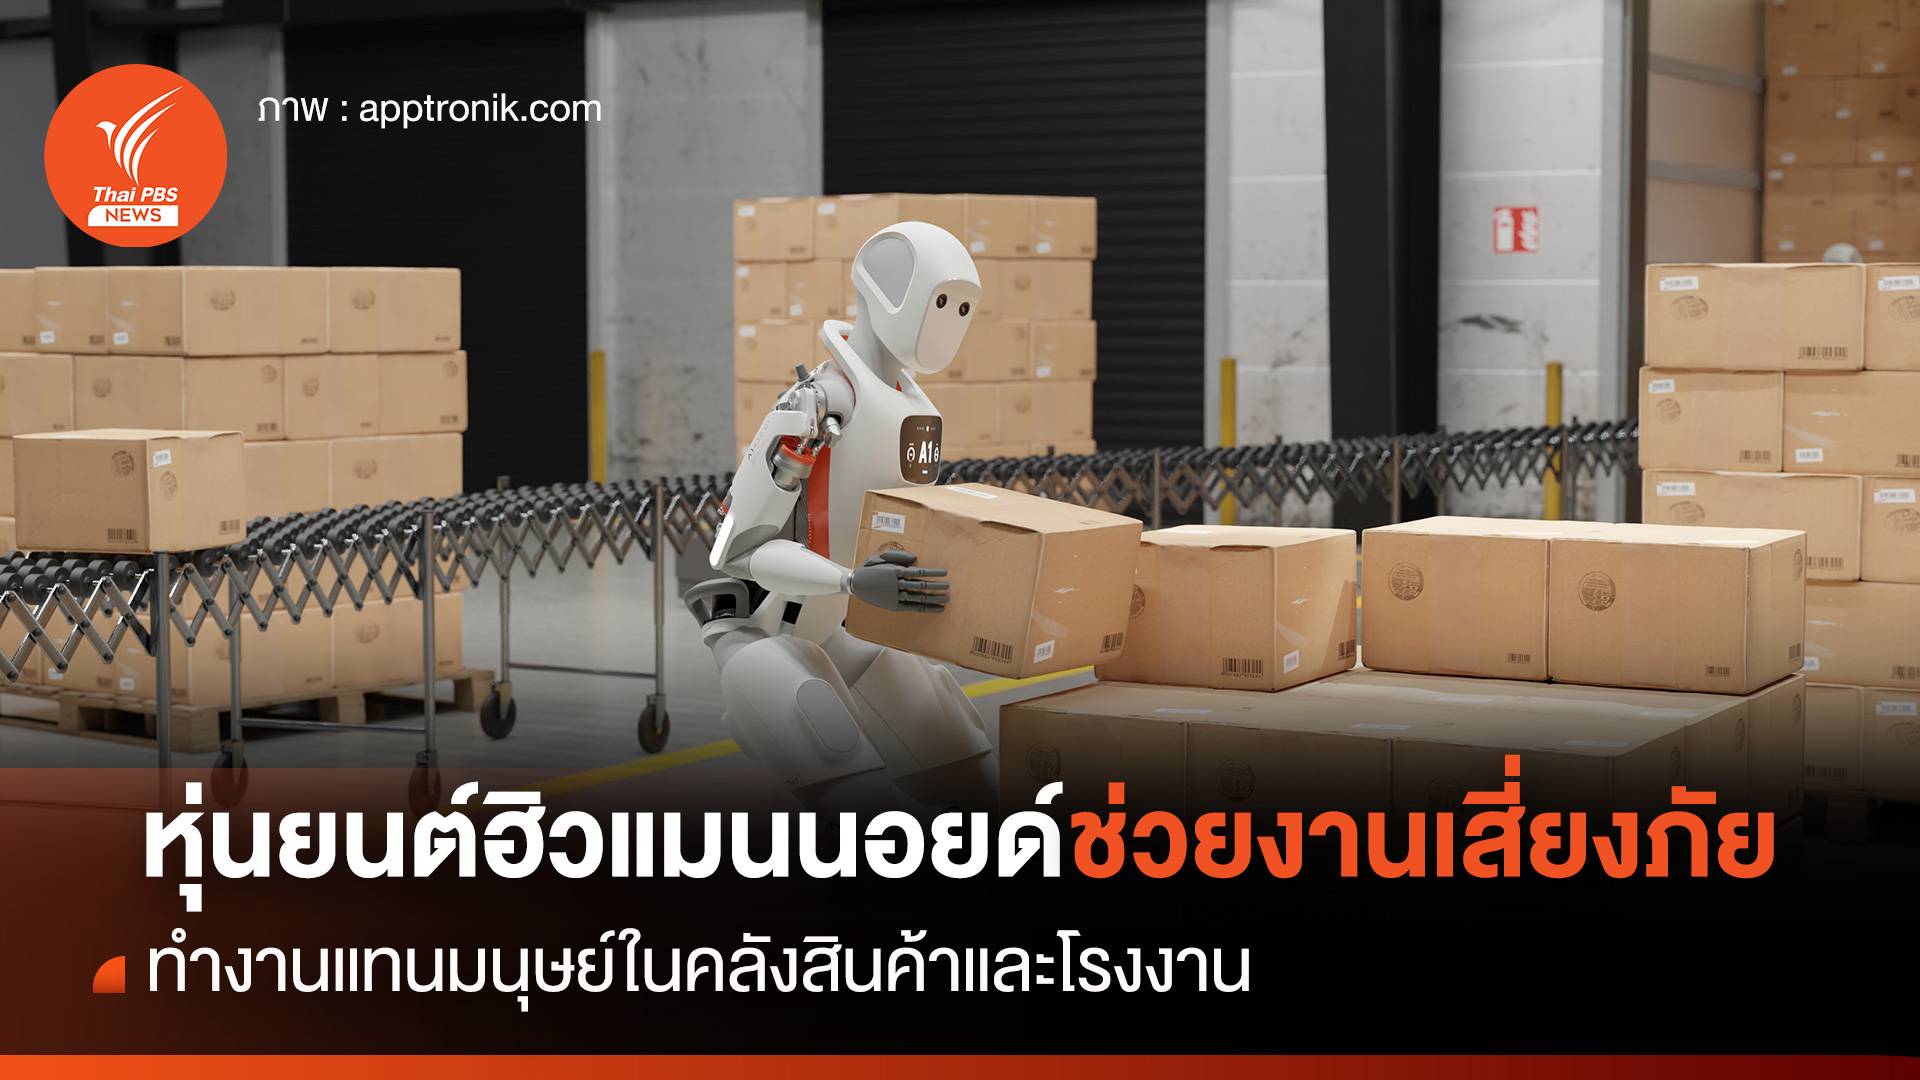 หุ่นยนต์ฮิวแมนนอยด์ช่วยงานเสี่ยงภัย ทำงานแทนมนุษย์ในคลังสินค้าและโรงงาน